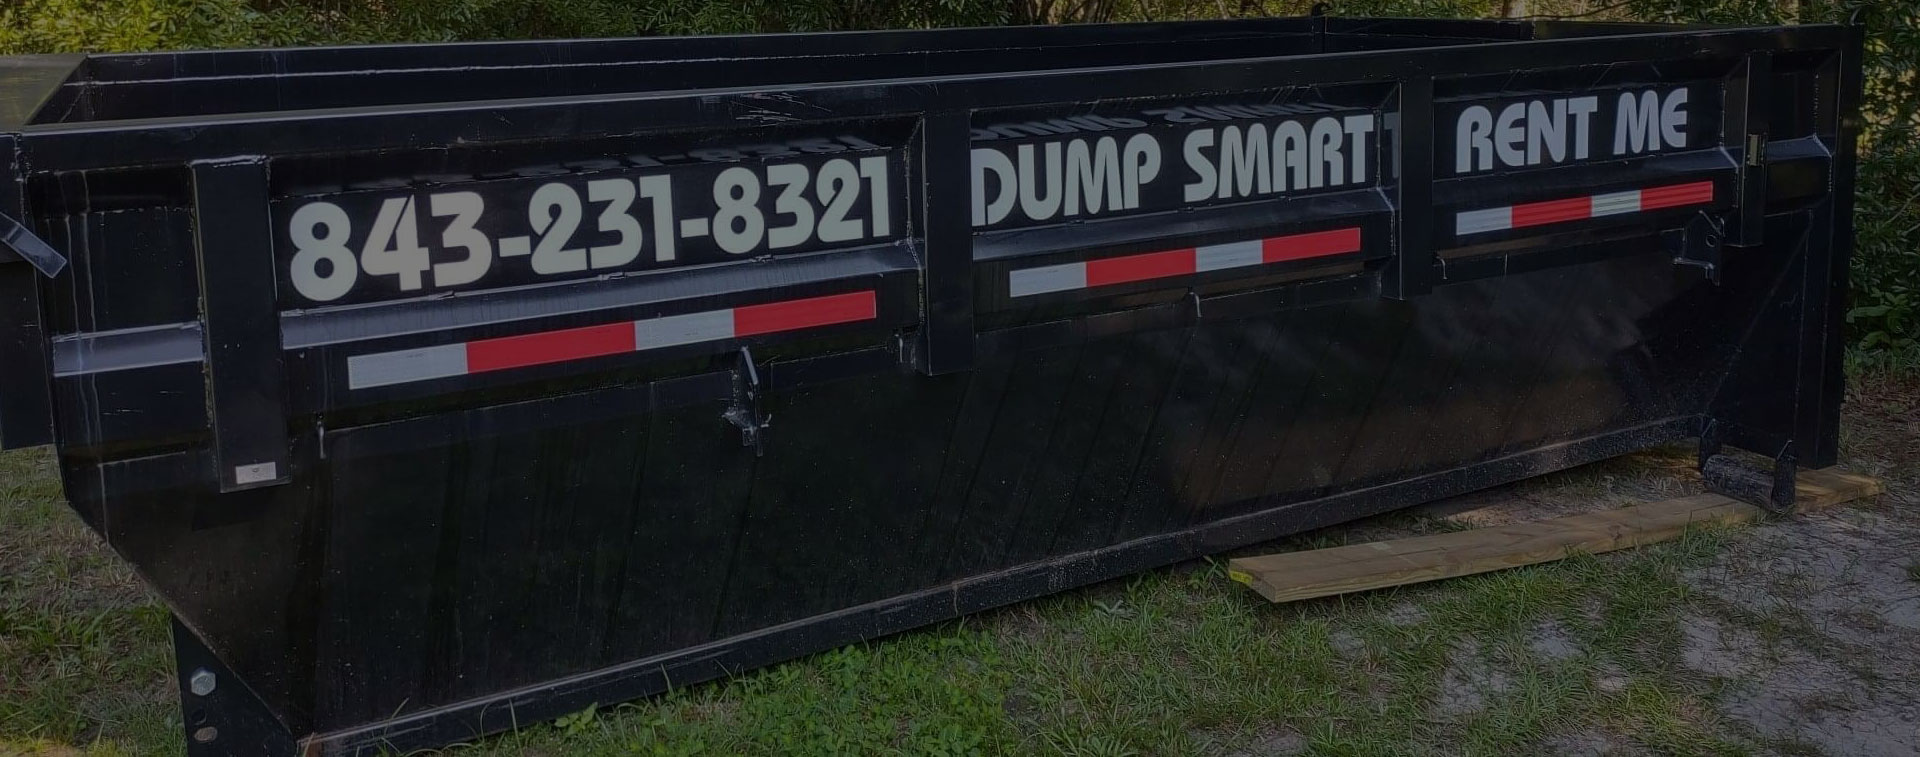 Dumpster Rentals Myrtle Beach